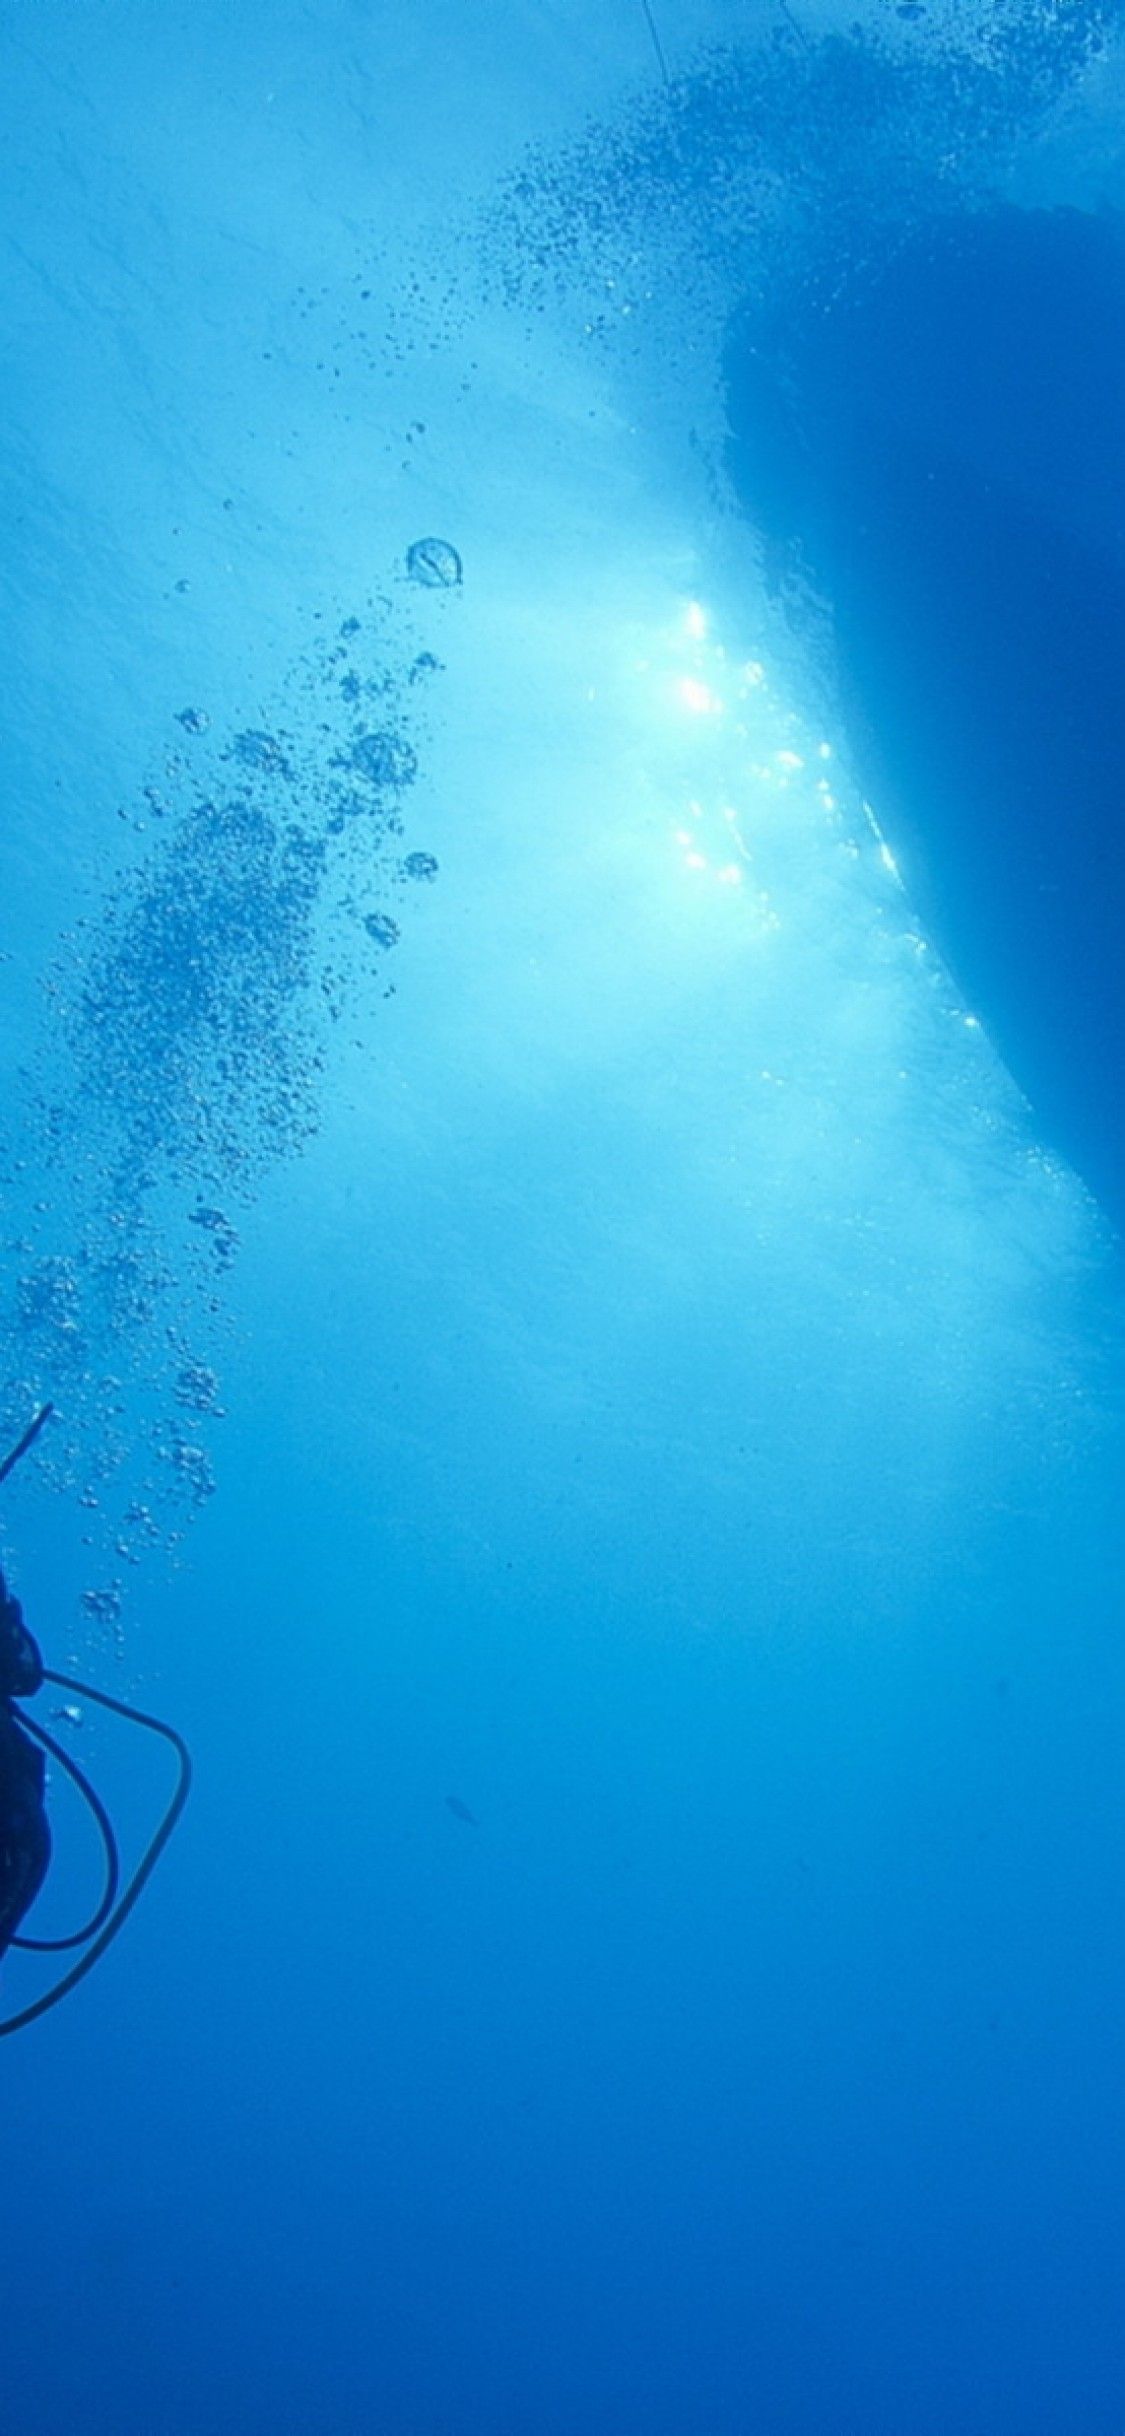 Hãy cùng với chúng tôi, tìm kiếm những bức ảnh với chủ đề lặn dưới nước để làm hình nền cho điện thoại của bạn. Khám phá những bức ảnh với những chú cá lớn dưới nước, những vật nuôi sống động dưới đáy đại dương. Hãy tận hưởng sự tự do của những chuyến phiêu lưu dưới nước.